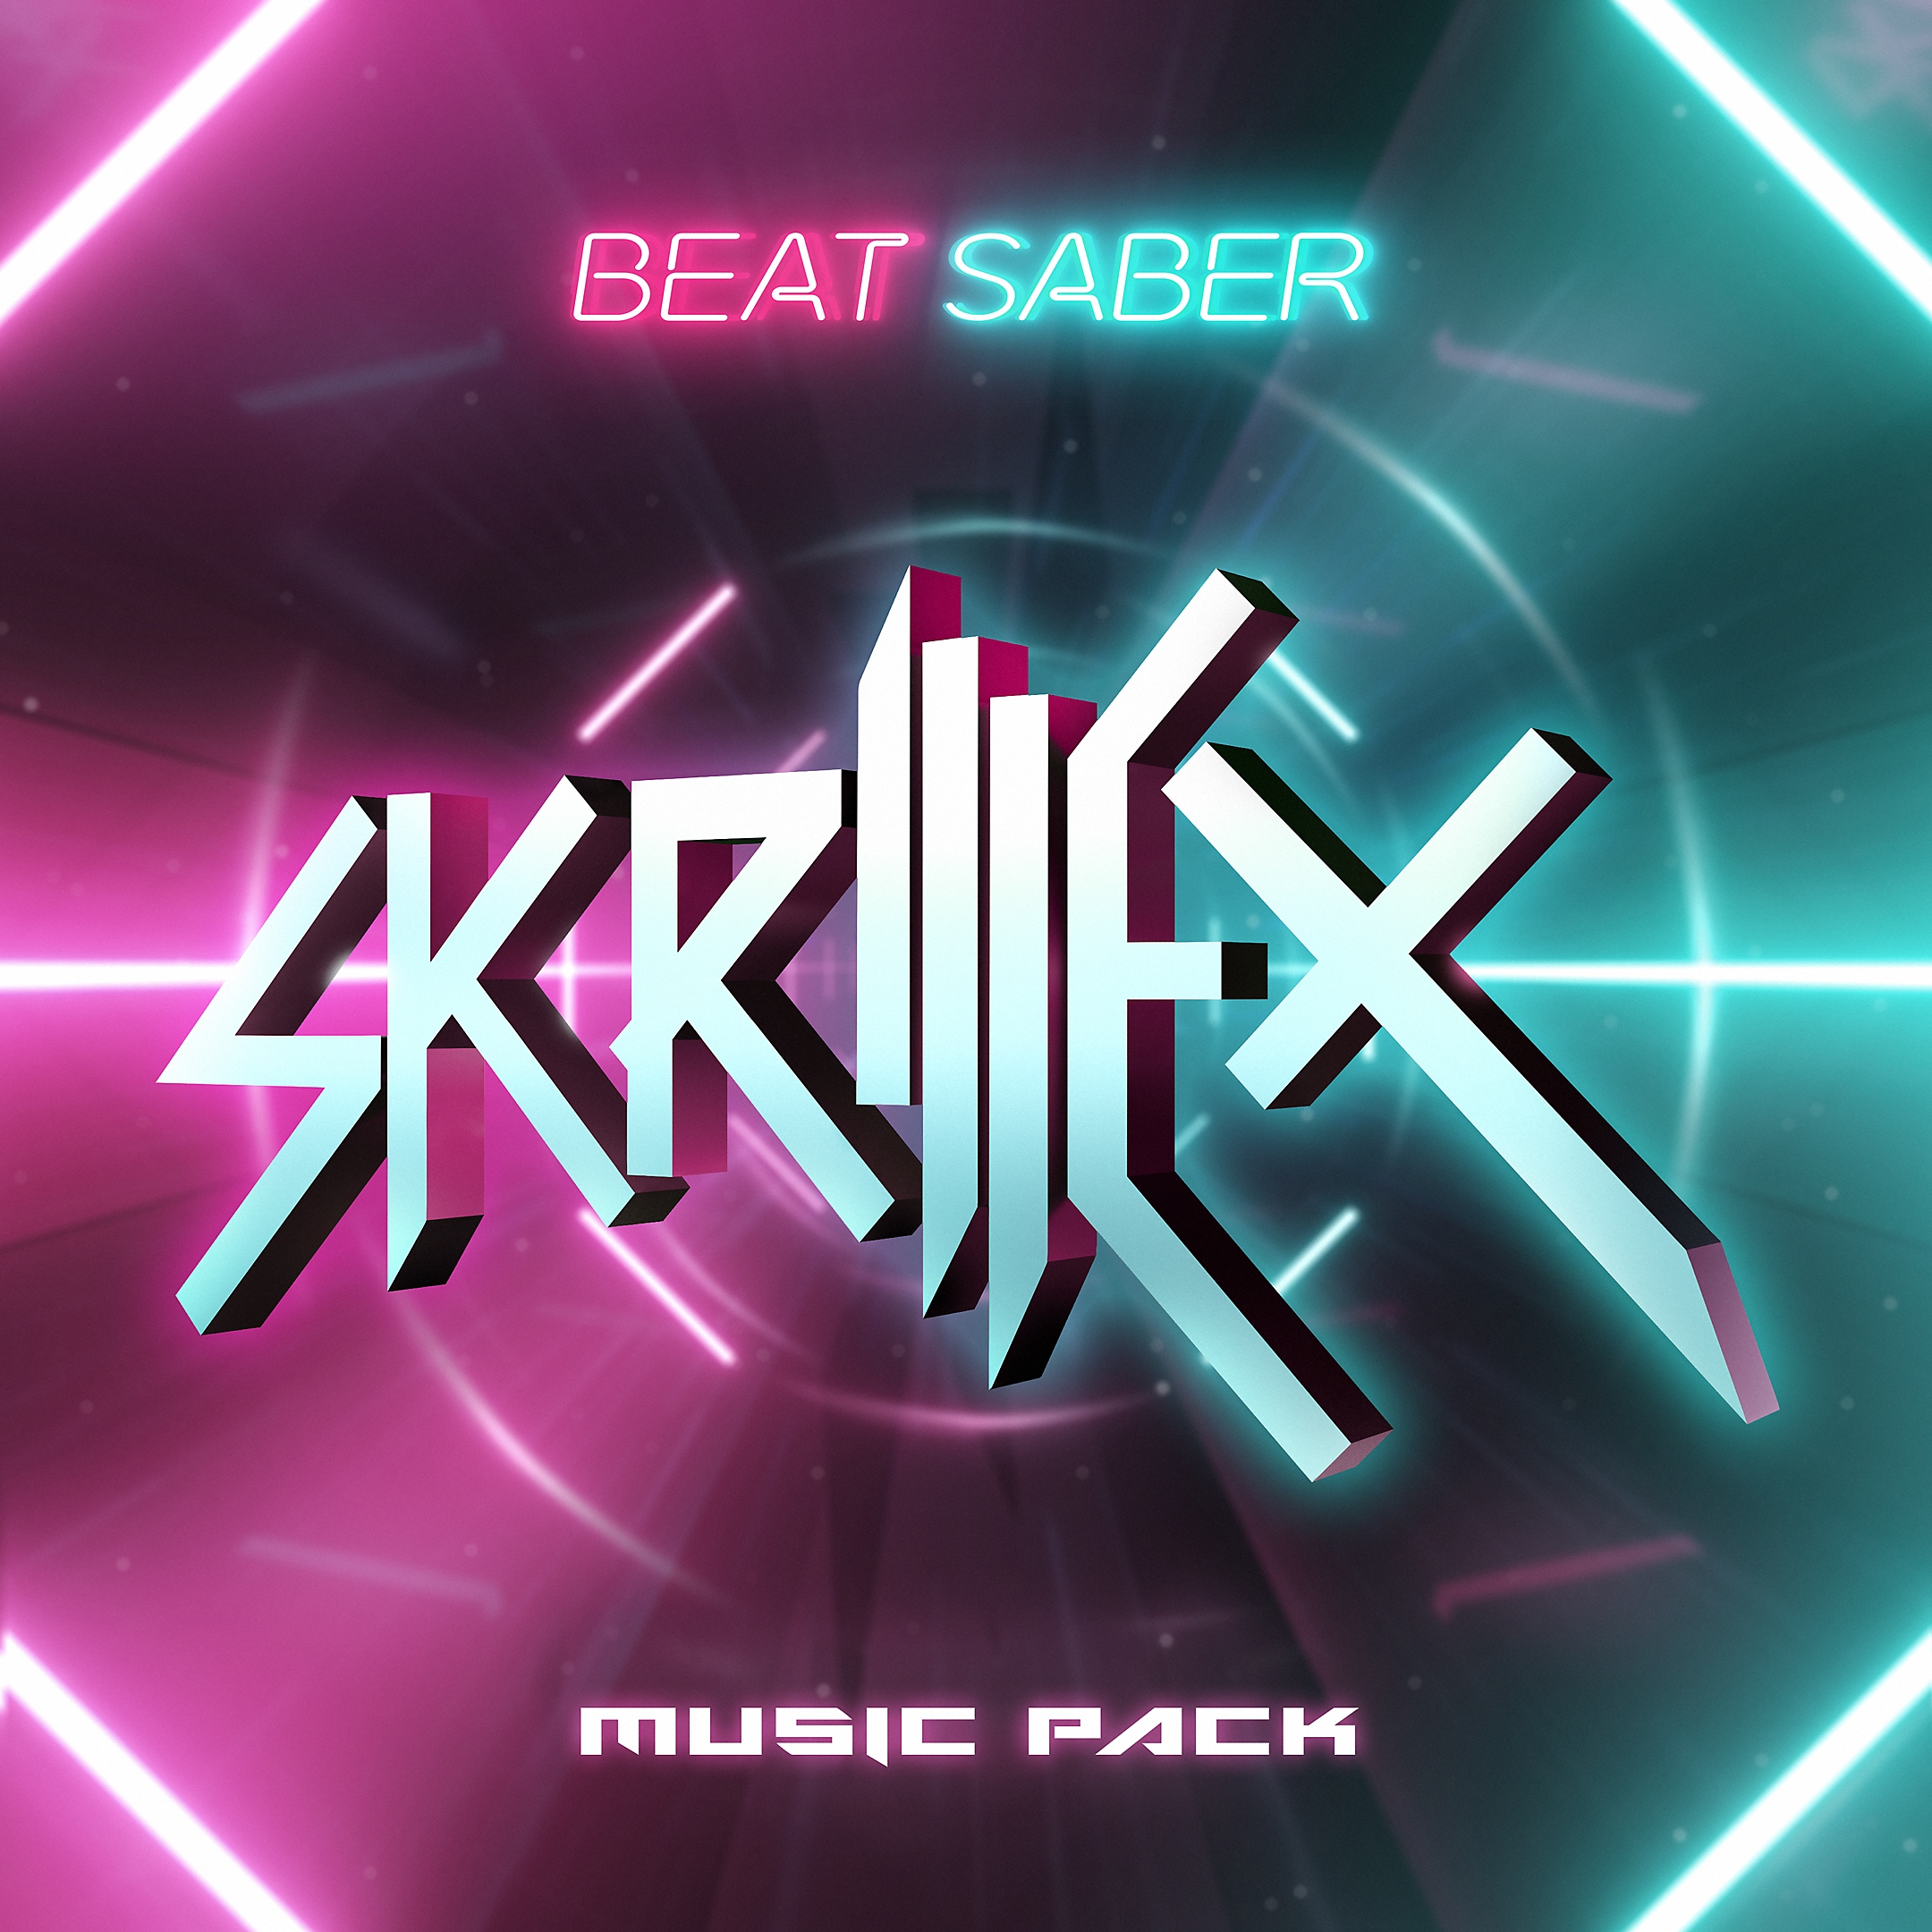 Музыкальный набор Skrillex для Beat Saber